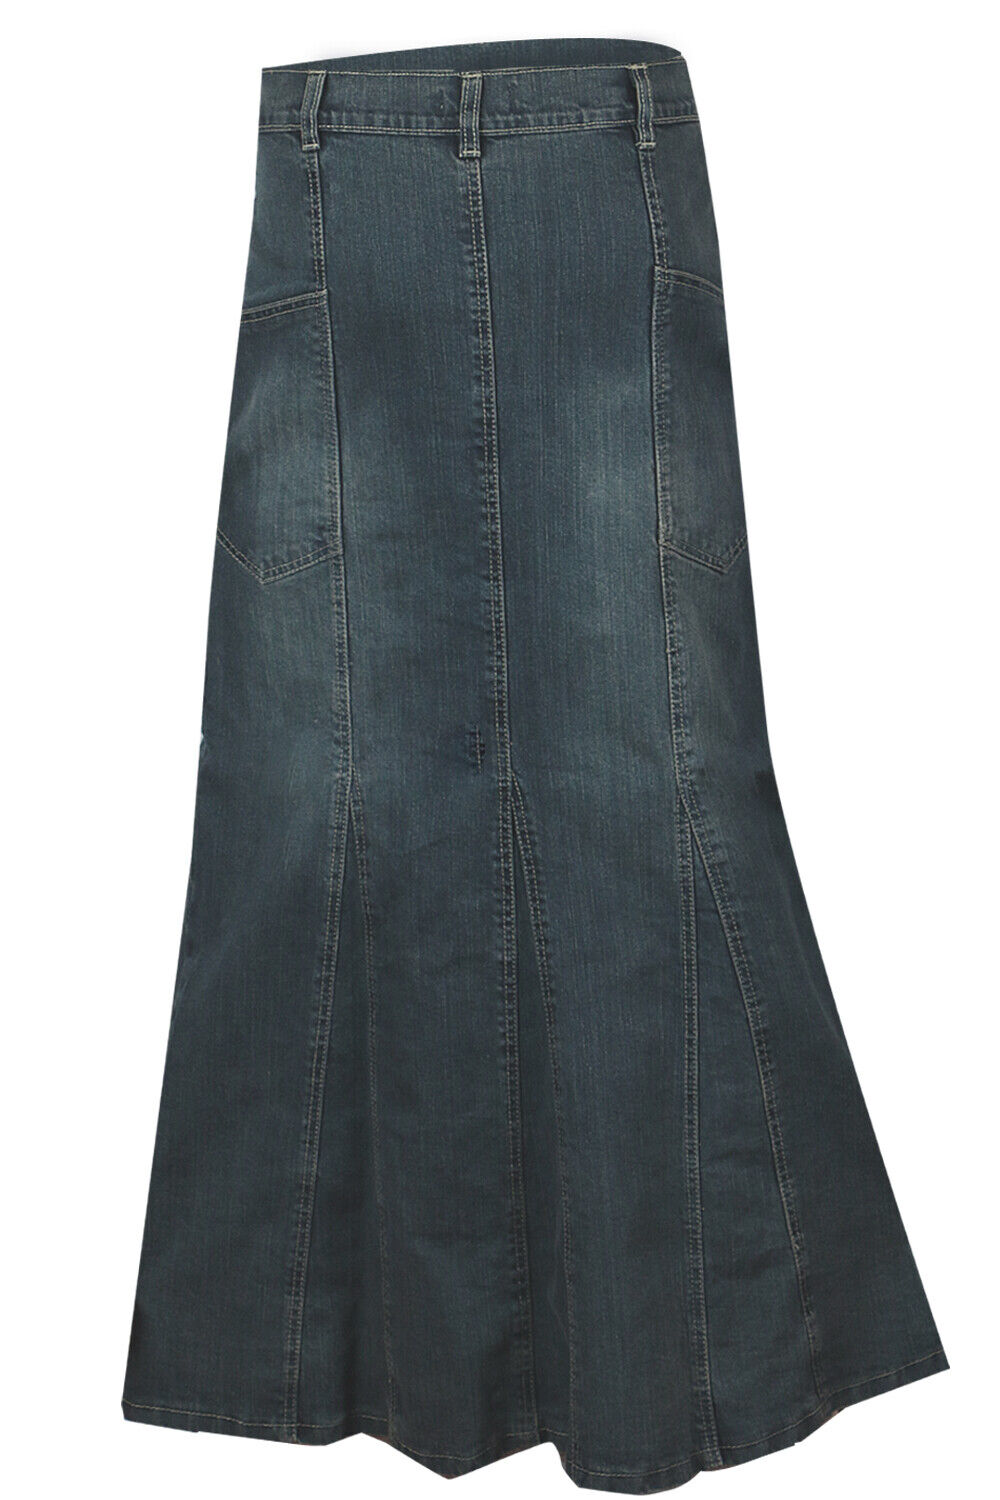 Clove Women Blue Denim Flared Long Maxi Skirt Size 10 12 14 16 18 20 22 ...